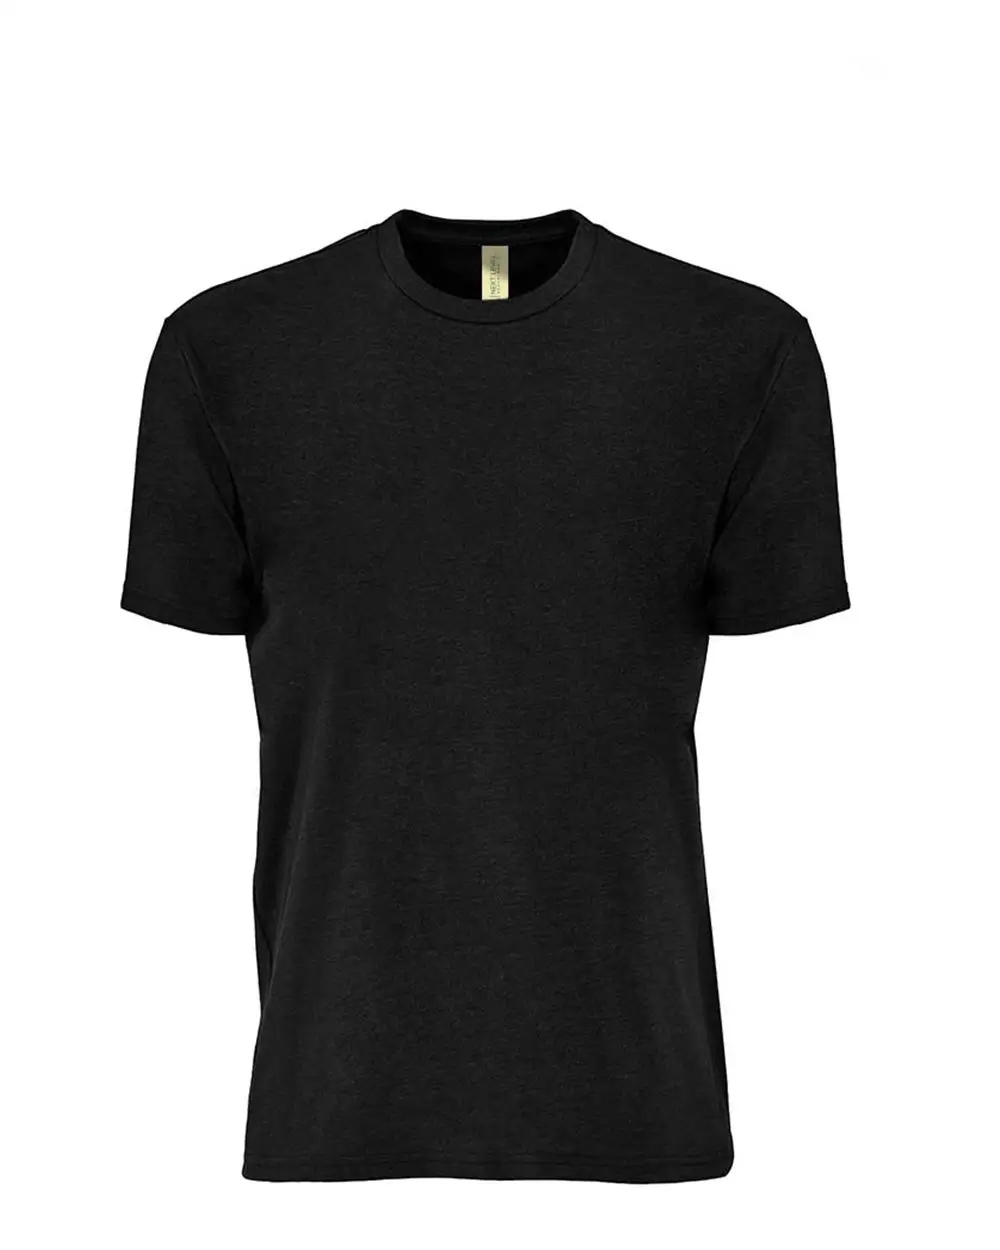 Tingkat Berikutnya 4210 uniseks Eco Performance T-Shirt hitam Heather dengan cetakan Logo kaus sejuk untuk pesanan besar